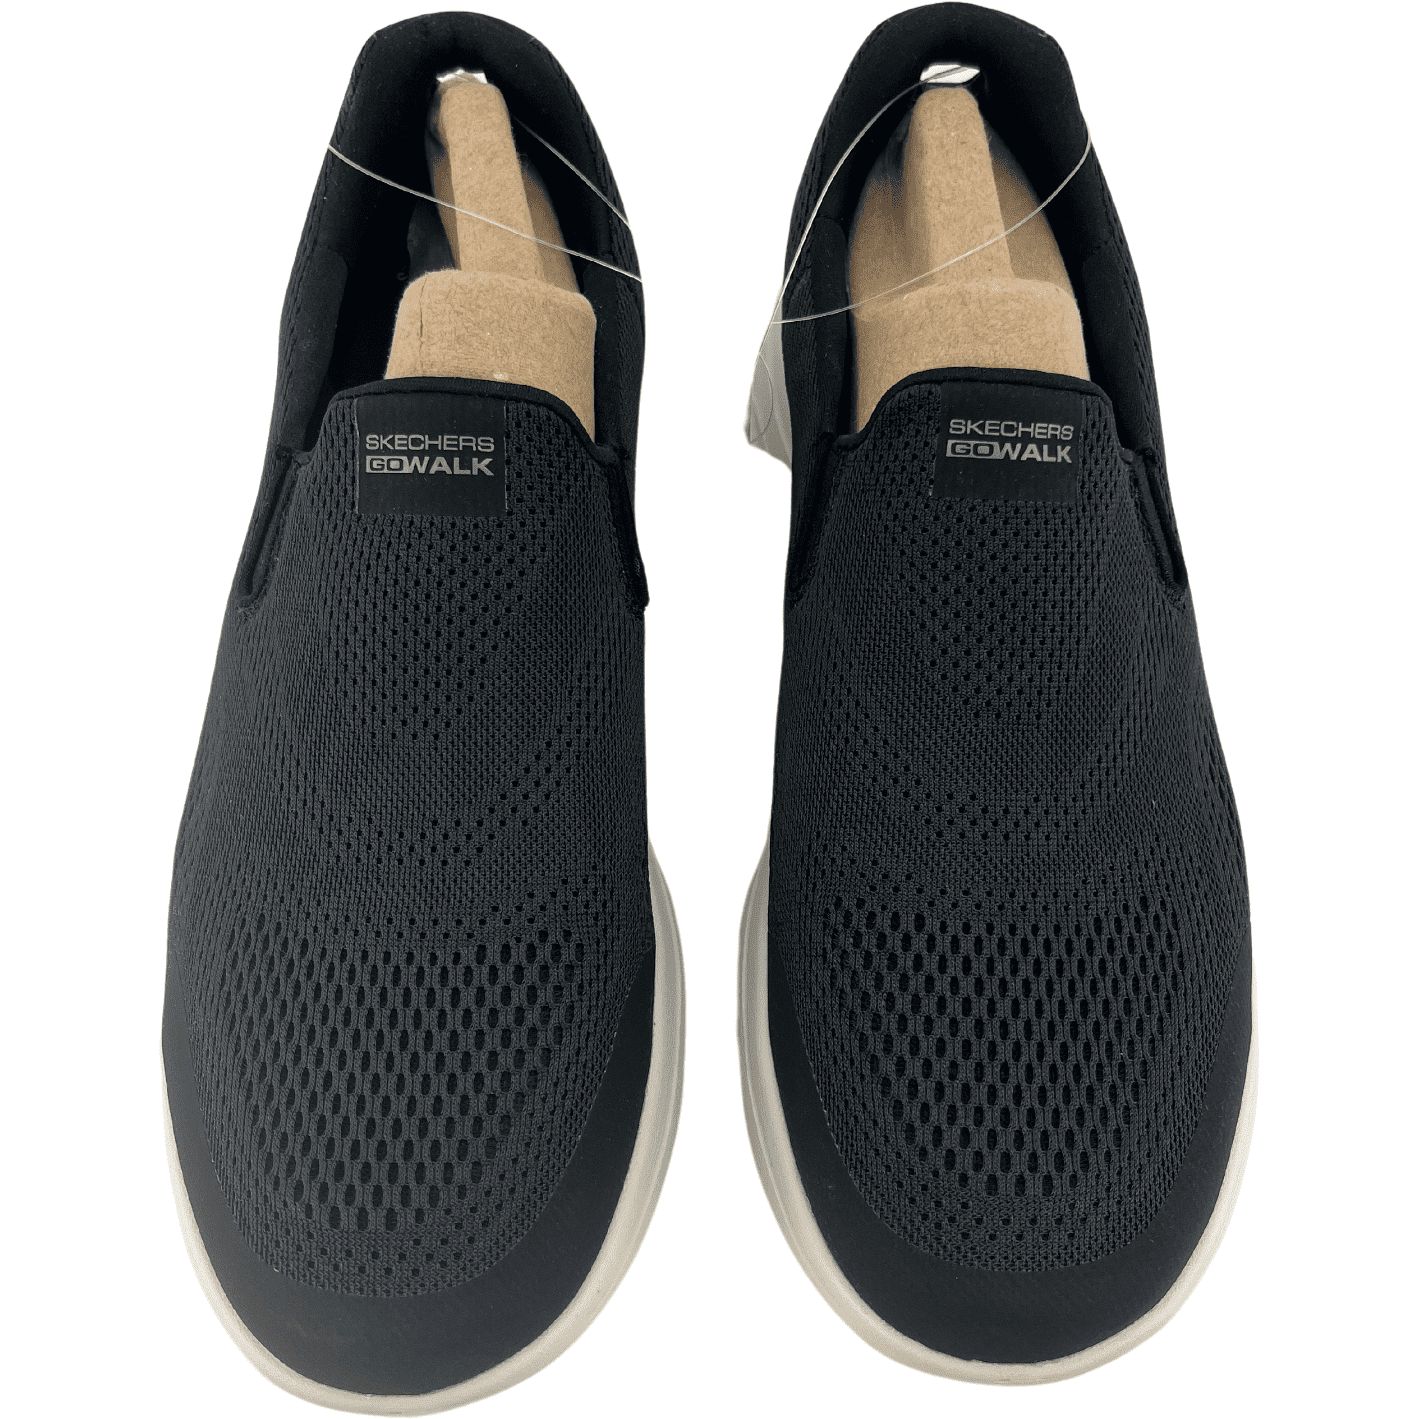 Skechers Men's Shoe / Men's Casual Shoe / Slip On / Black / Go Walk / Size 9